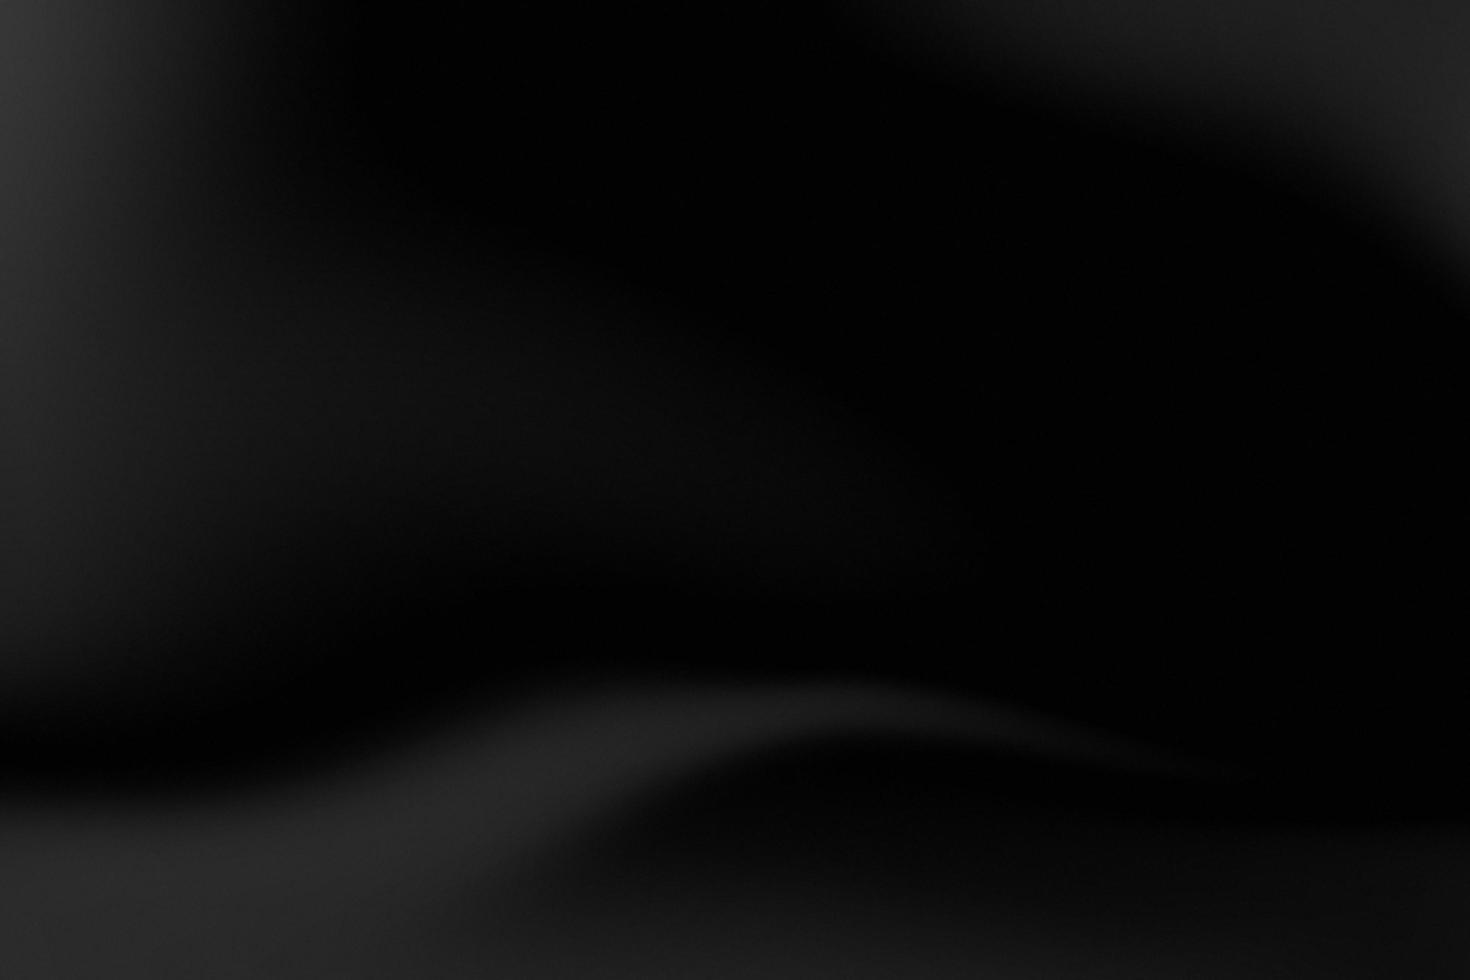 ilustração de fundo gradiente preto. fundo desfocado bonito e atraente com transição de cor suave. foto